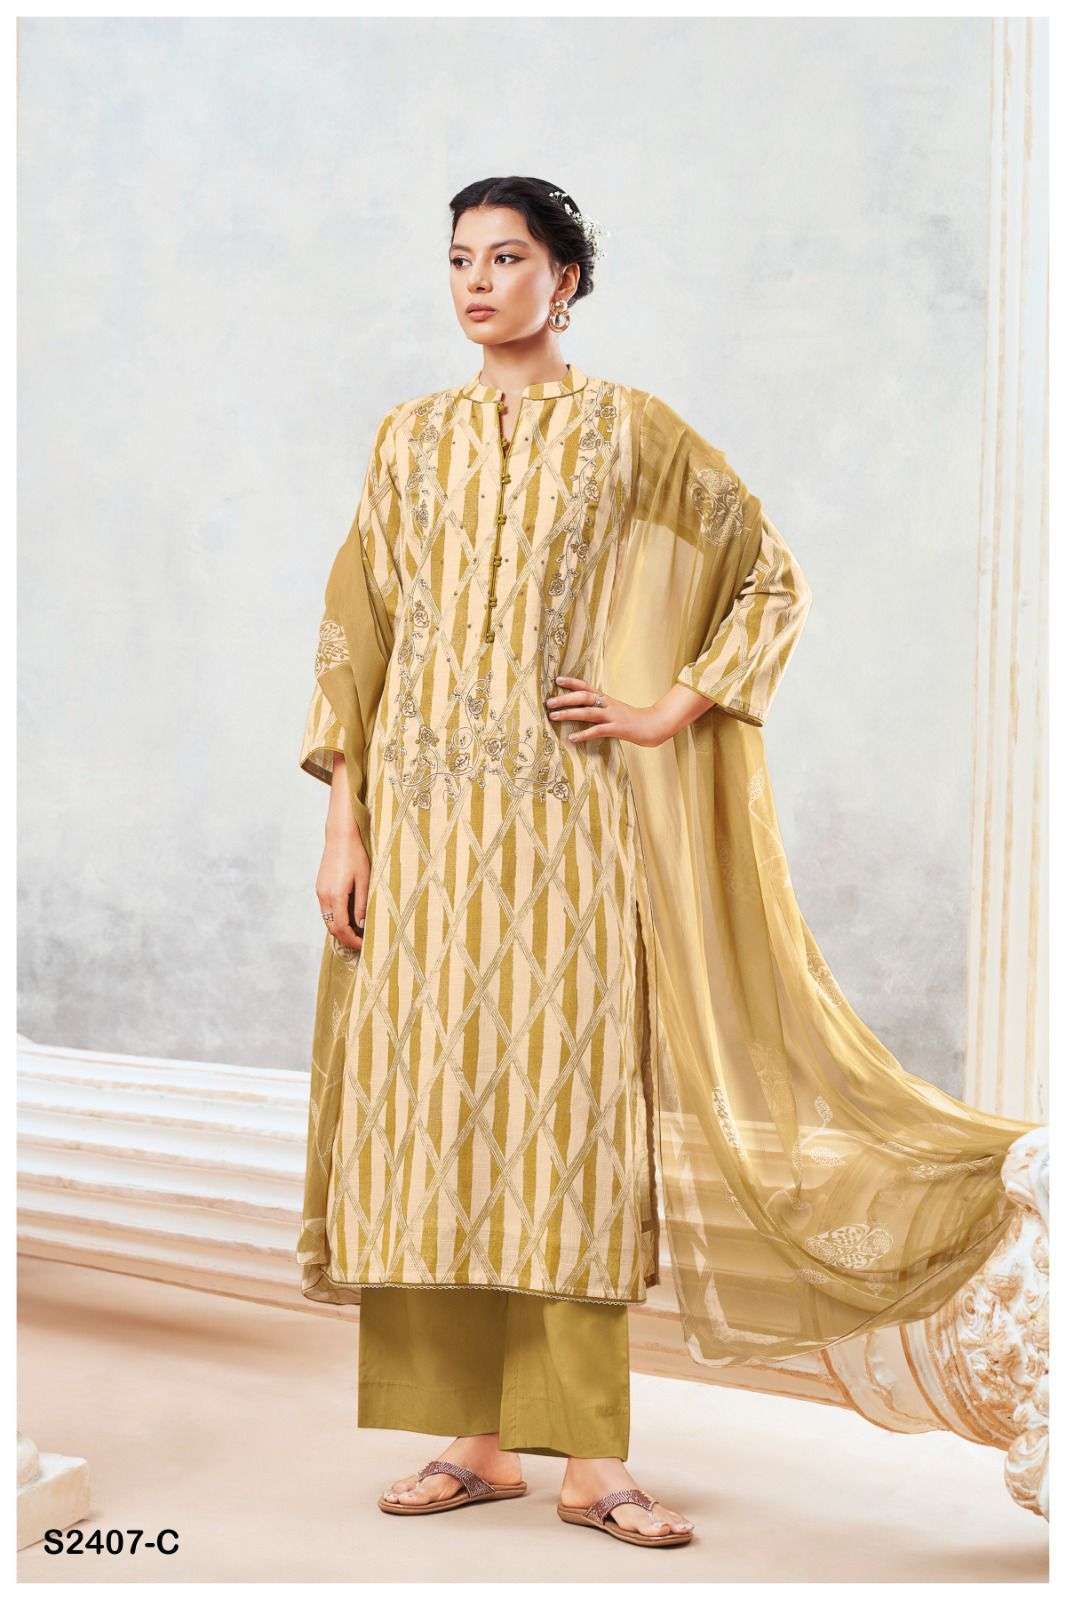 Ganga JISINIA 2407 Dress Materials Wholesale catalog